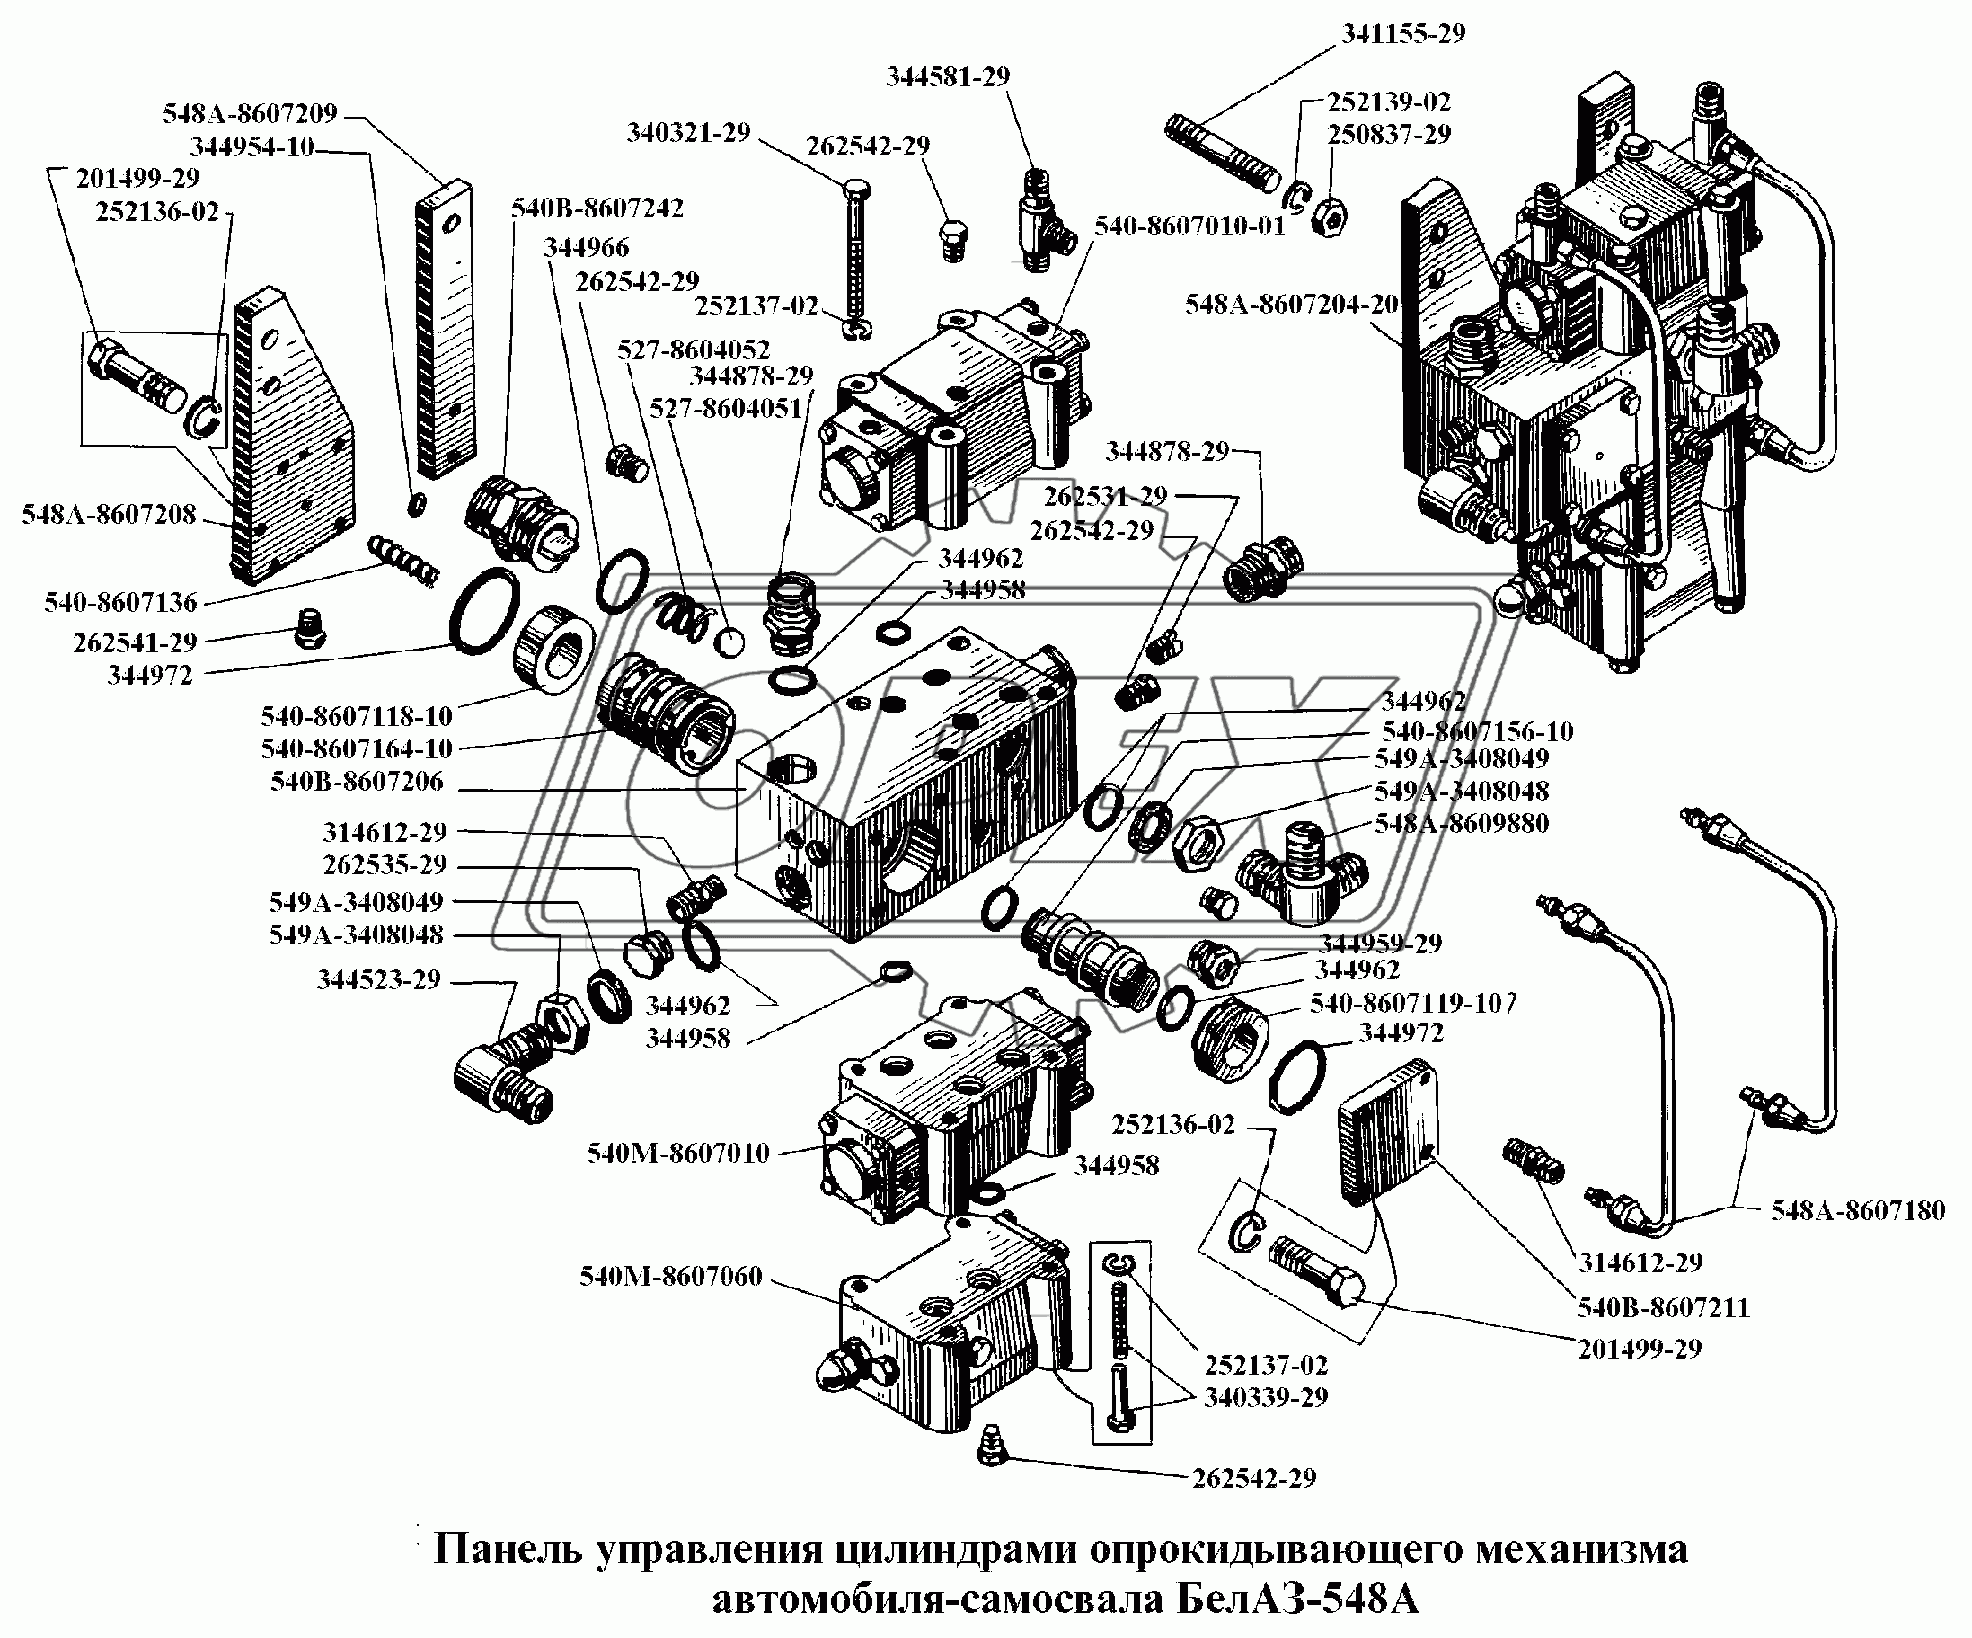 Панель управления цилиндрами опрокидывающего механизма